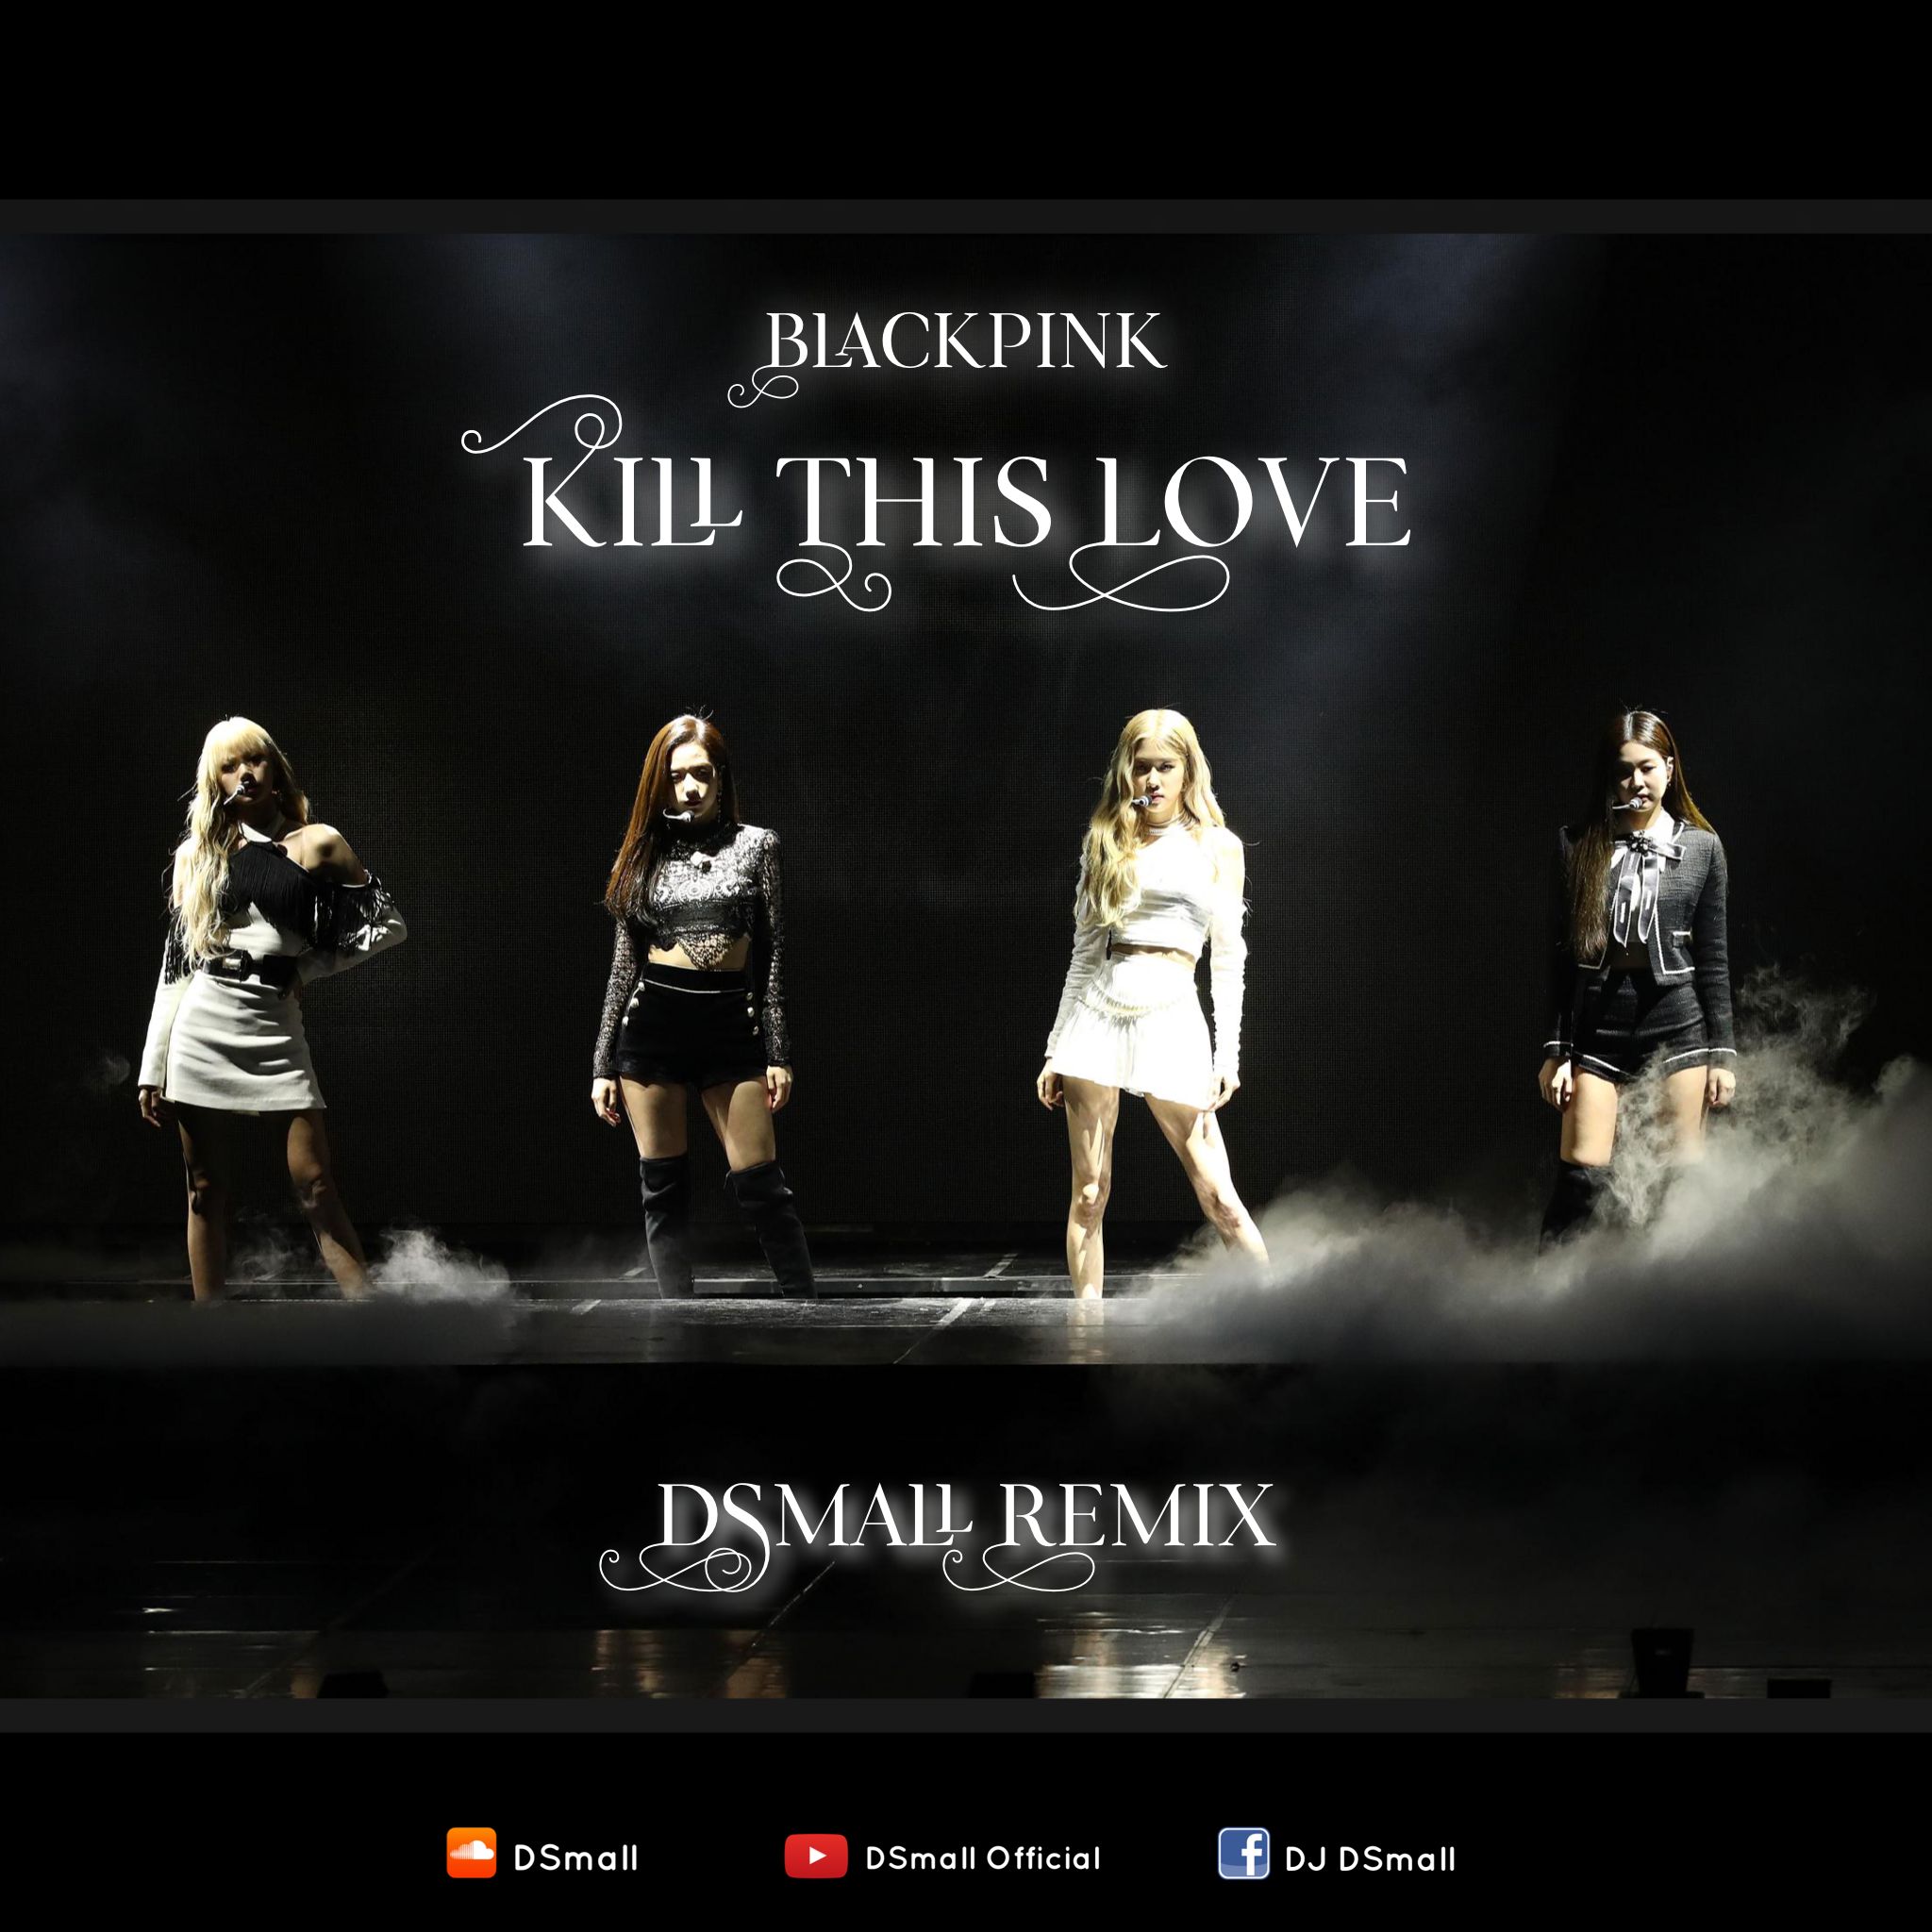 ഡൗൺലോഡ് BLACKPINK - 'Kill This Love' (DSmall Remix)